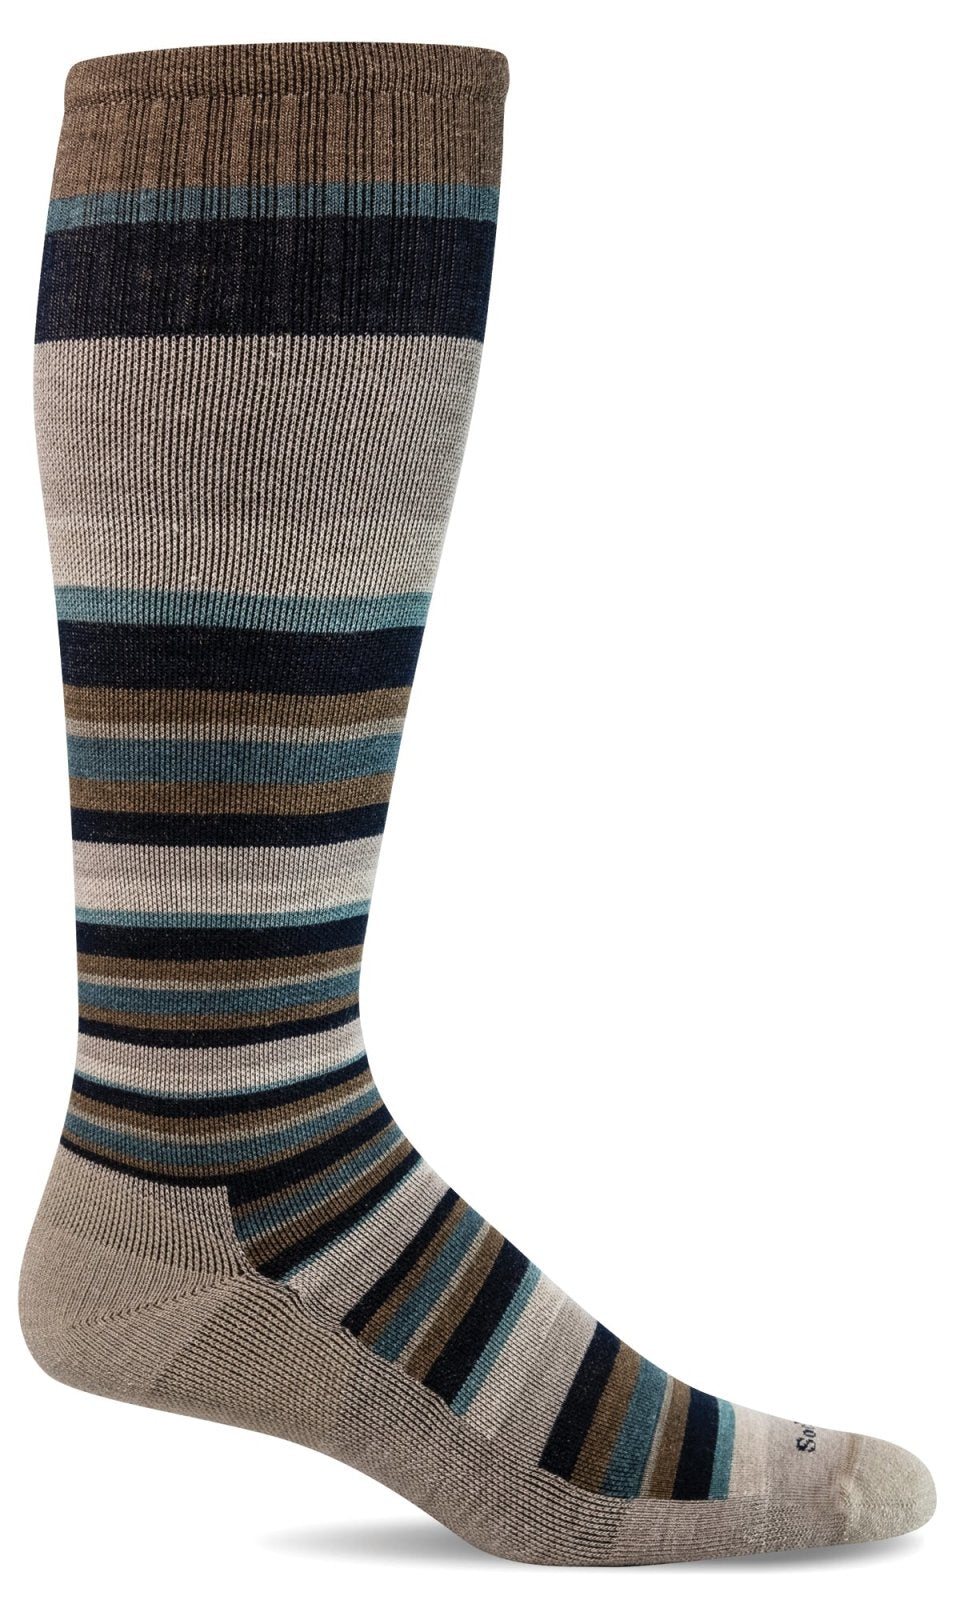 Merino Wool Socks Designed to Help You Feel Better | Sockwell